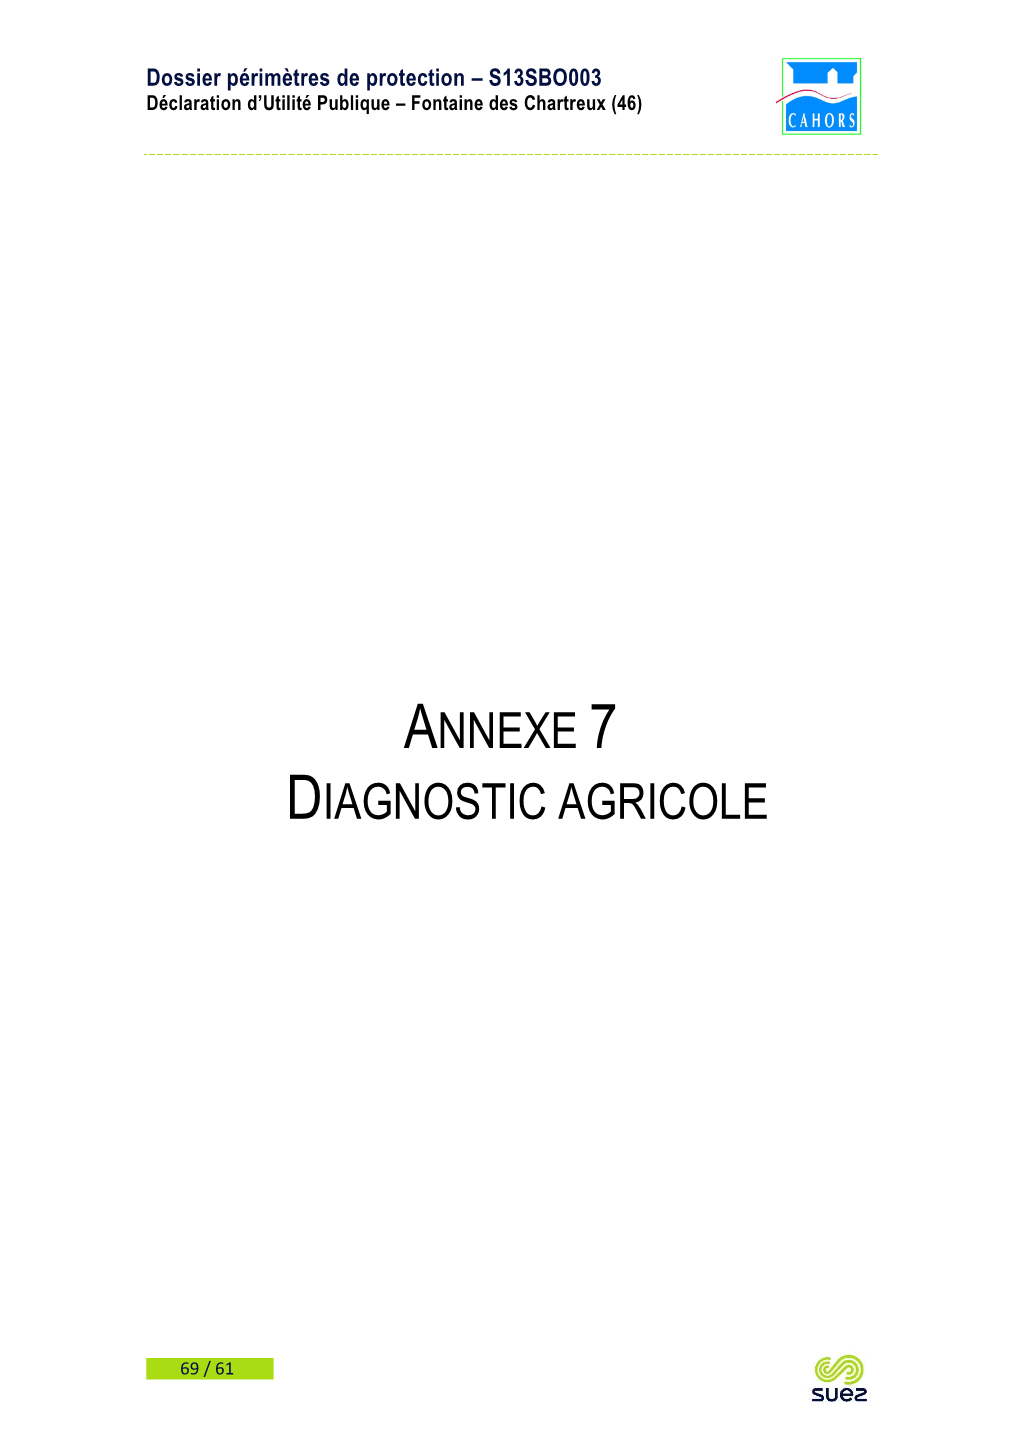 Annexe 7 Diagnostic Agricole